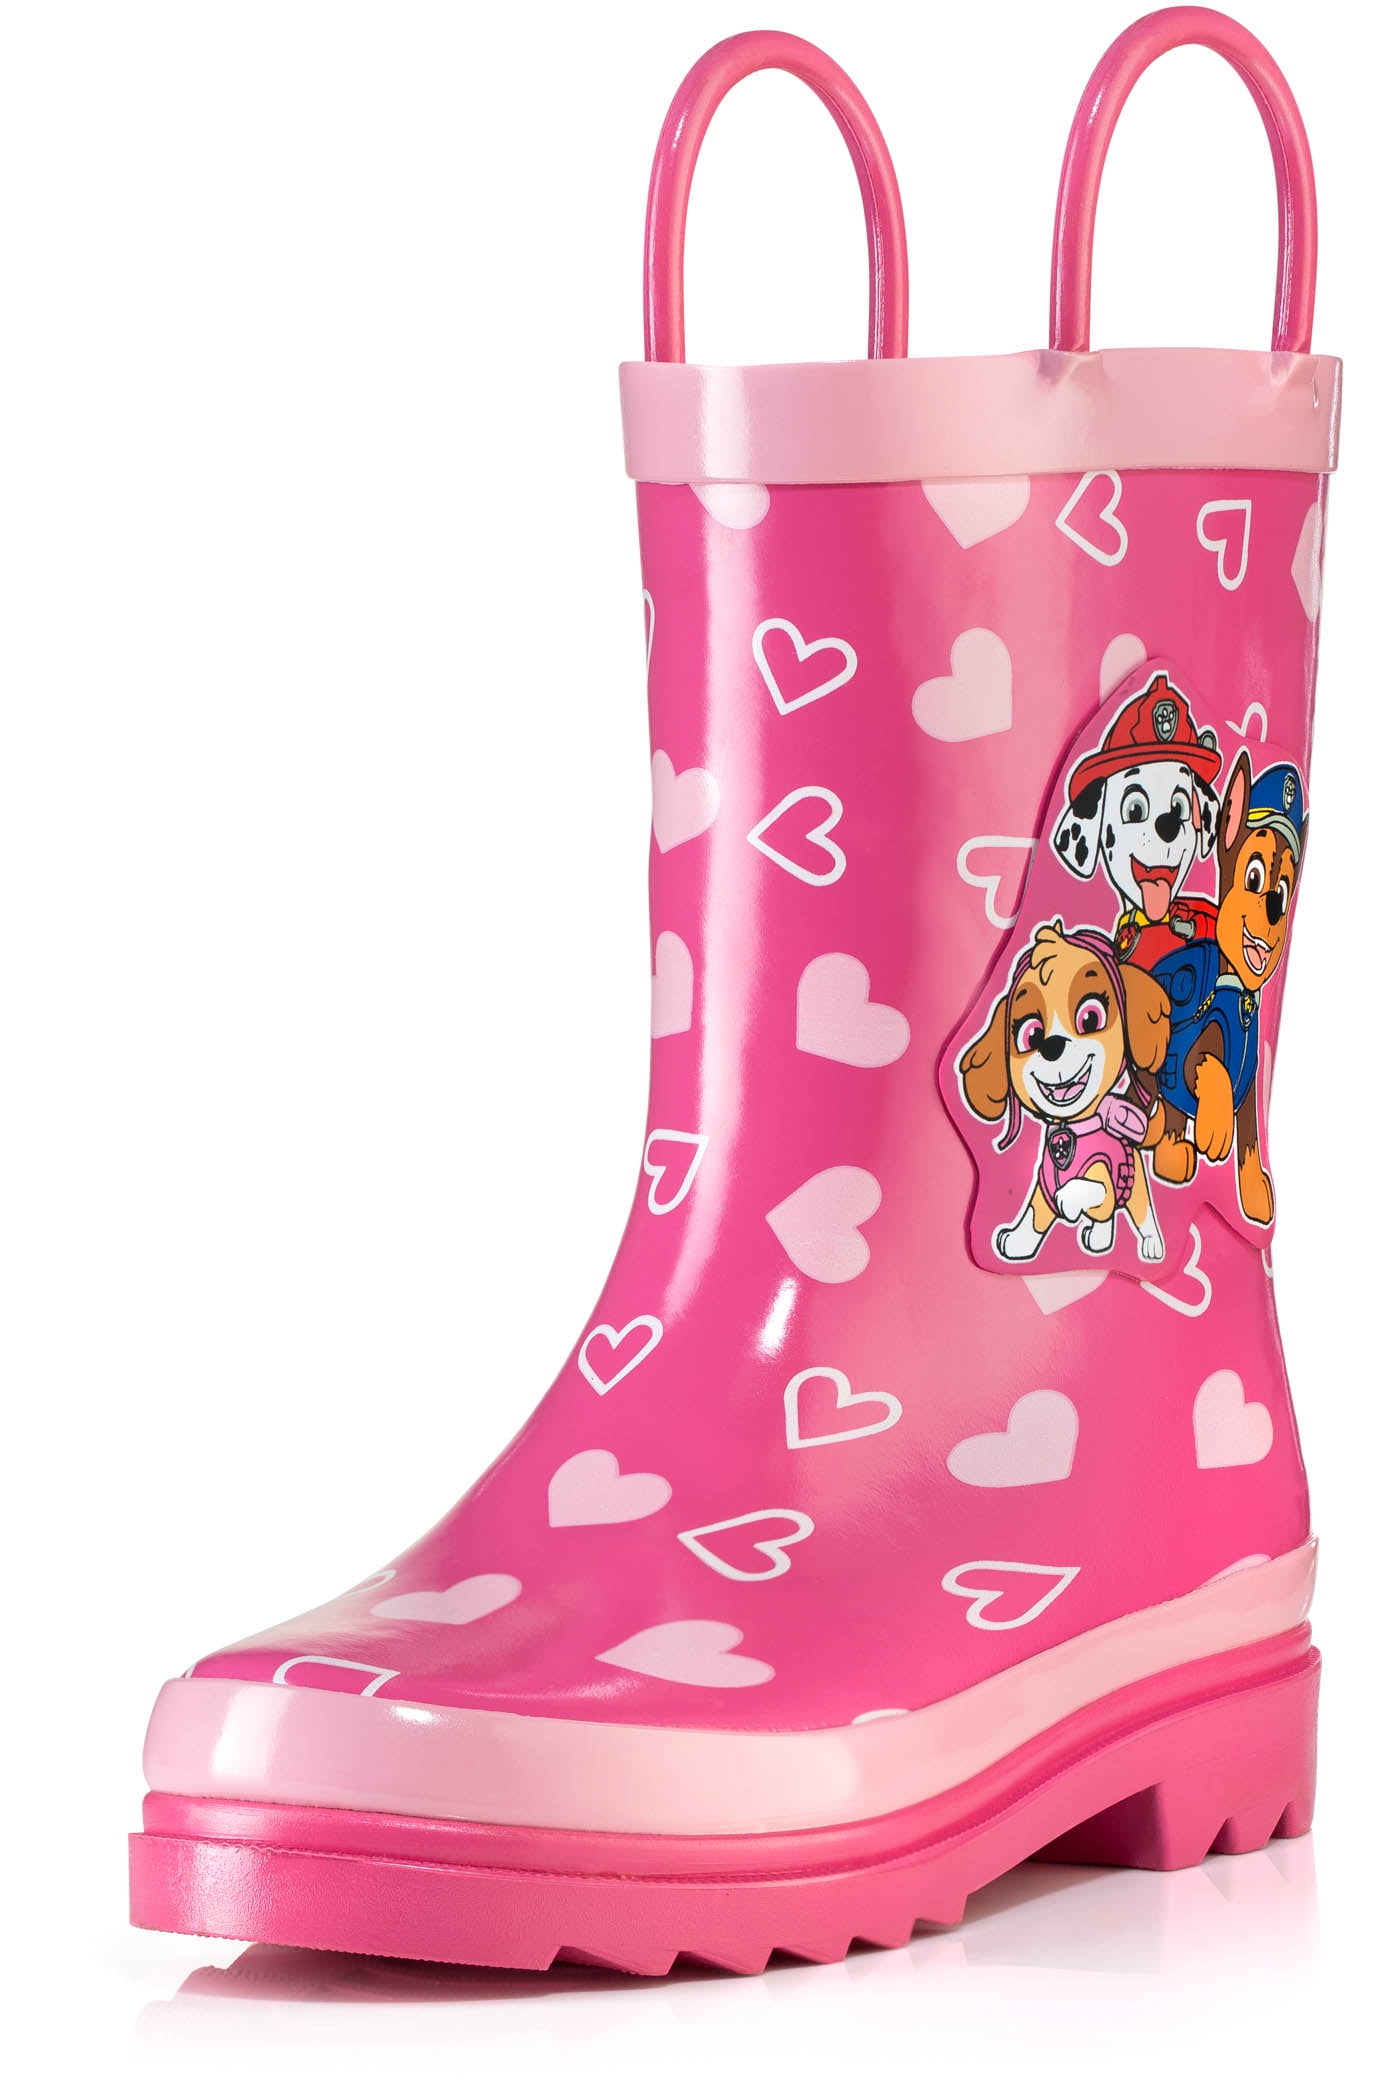 girls rain boots size 10